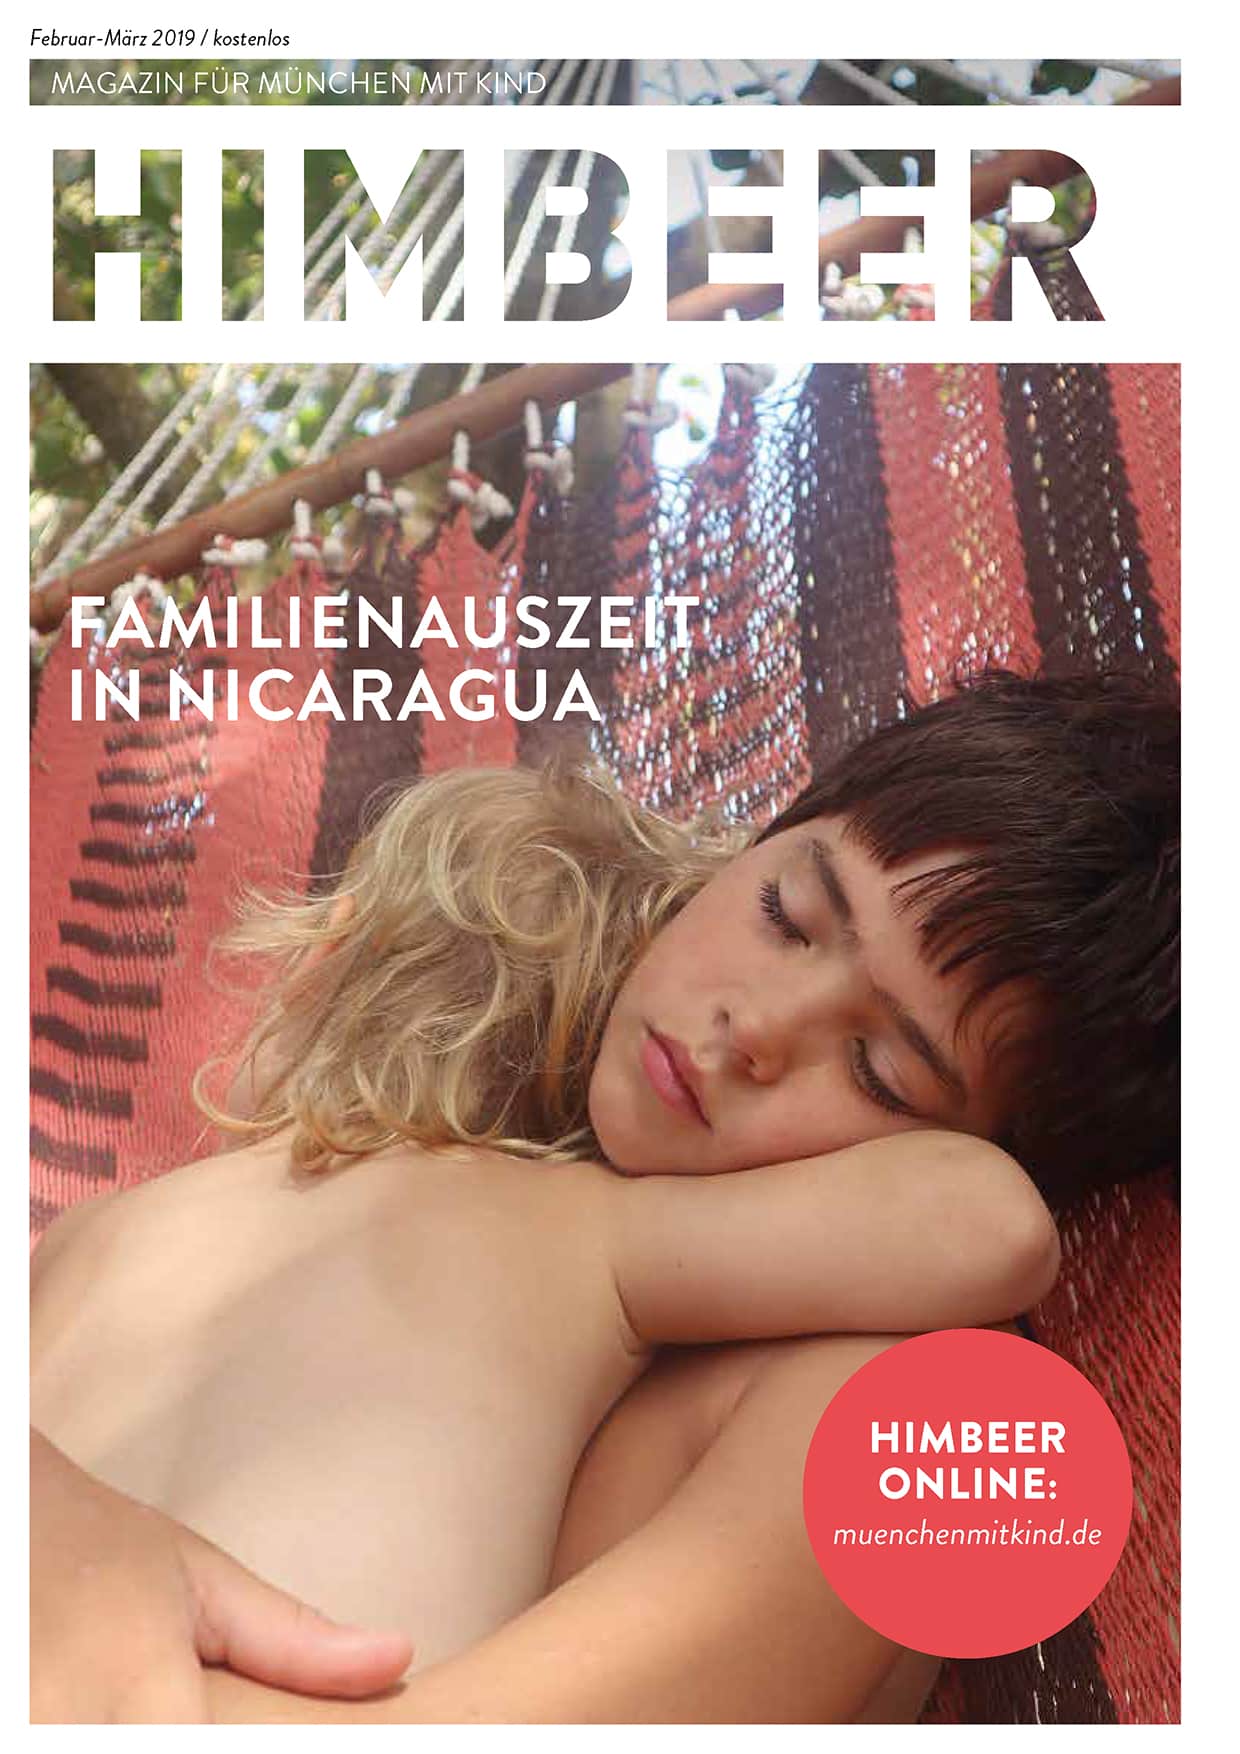 HIMBEER Magazin für München mit Kind Februar-März 2019 // HIMBEER